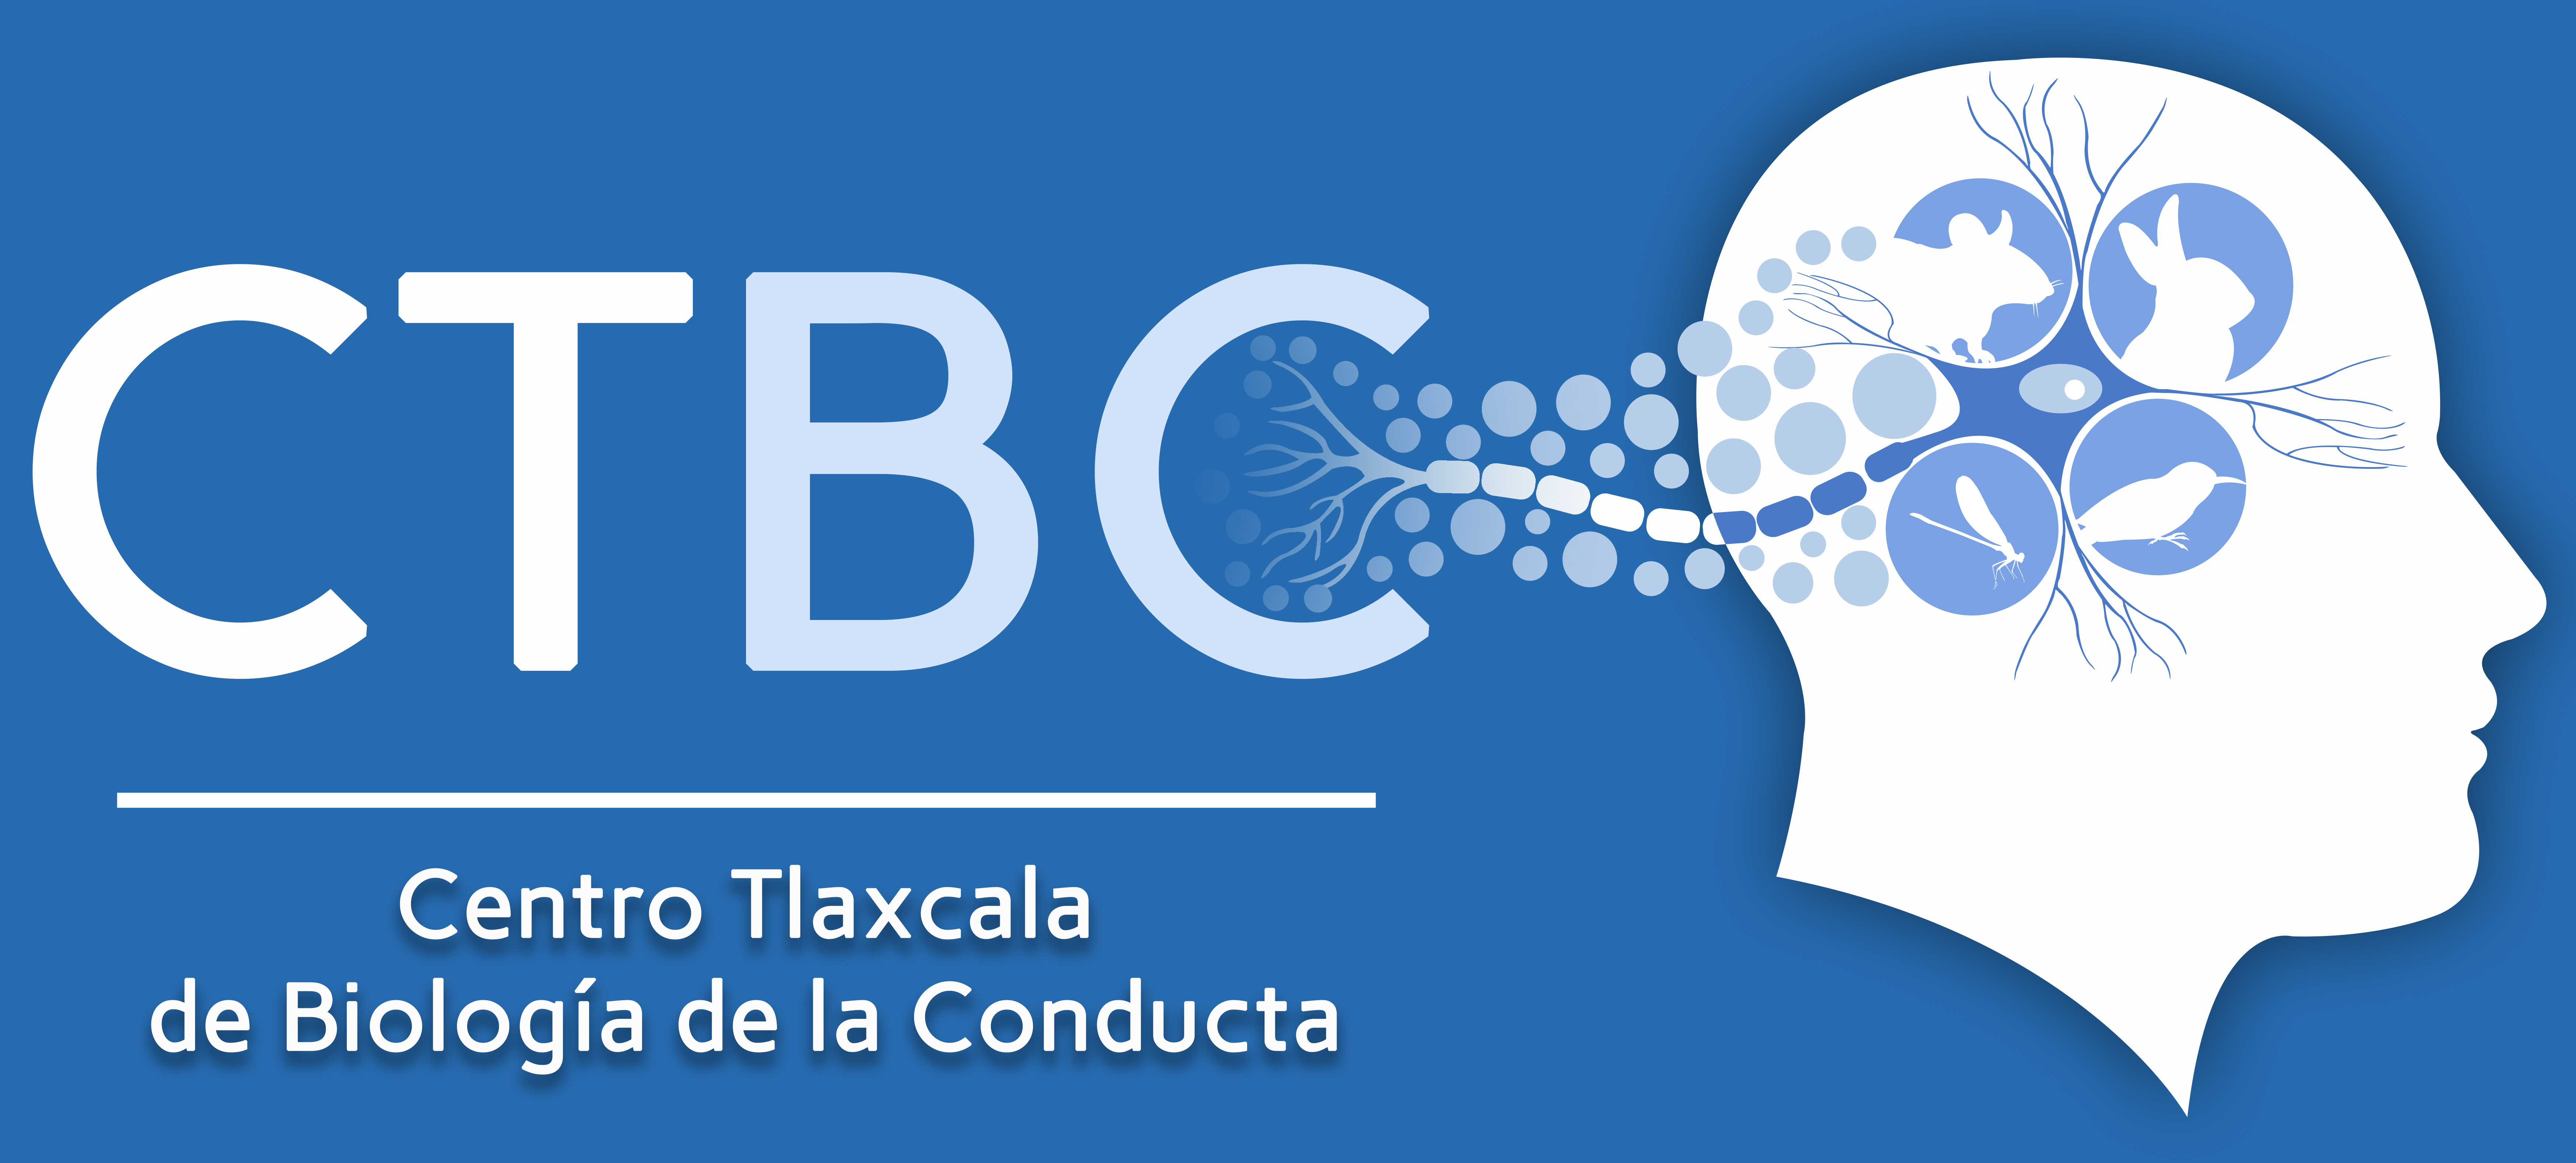 Universidad Autónoma de Tlaxcala, Centro Tlaxcala de Biología de la Conducta